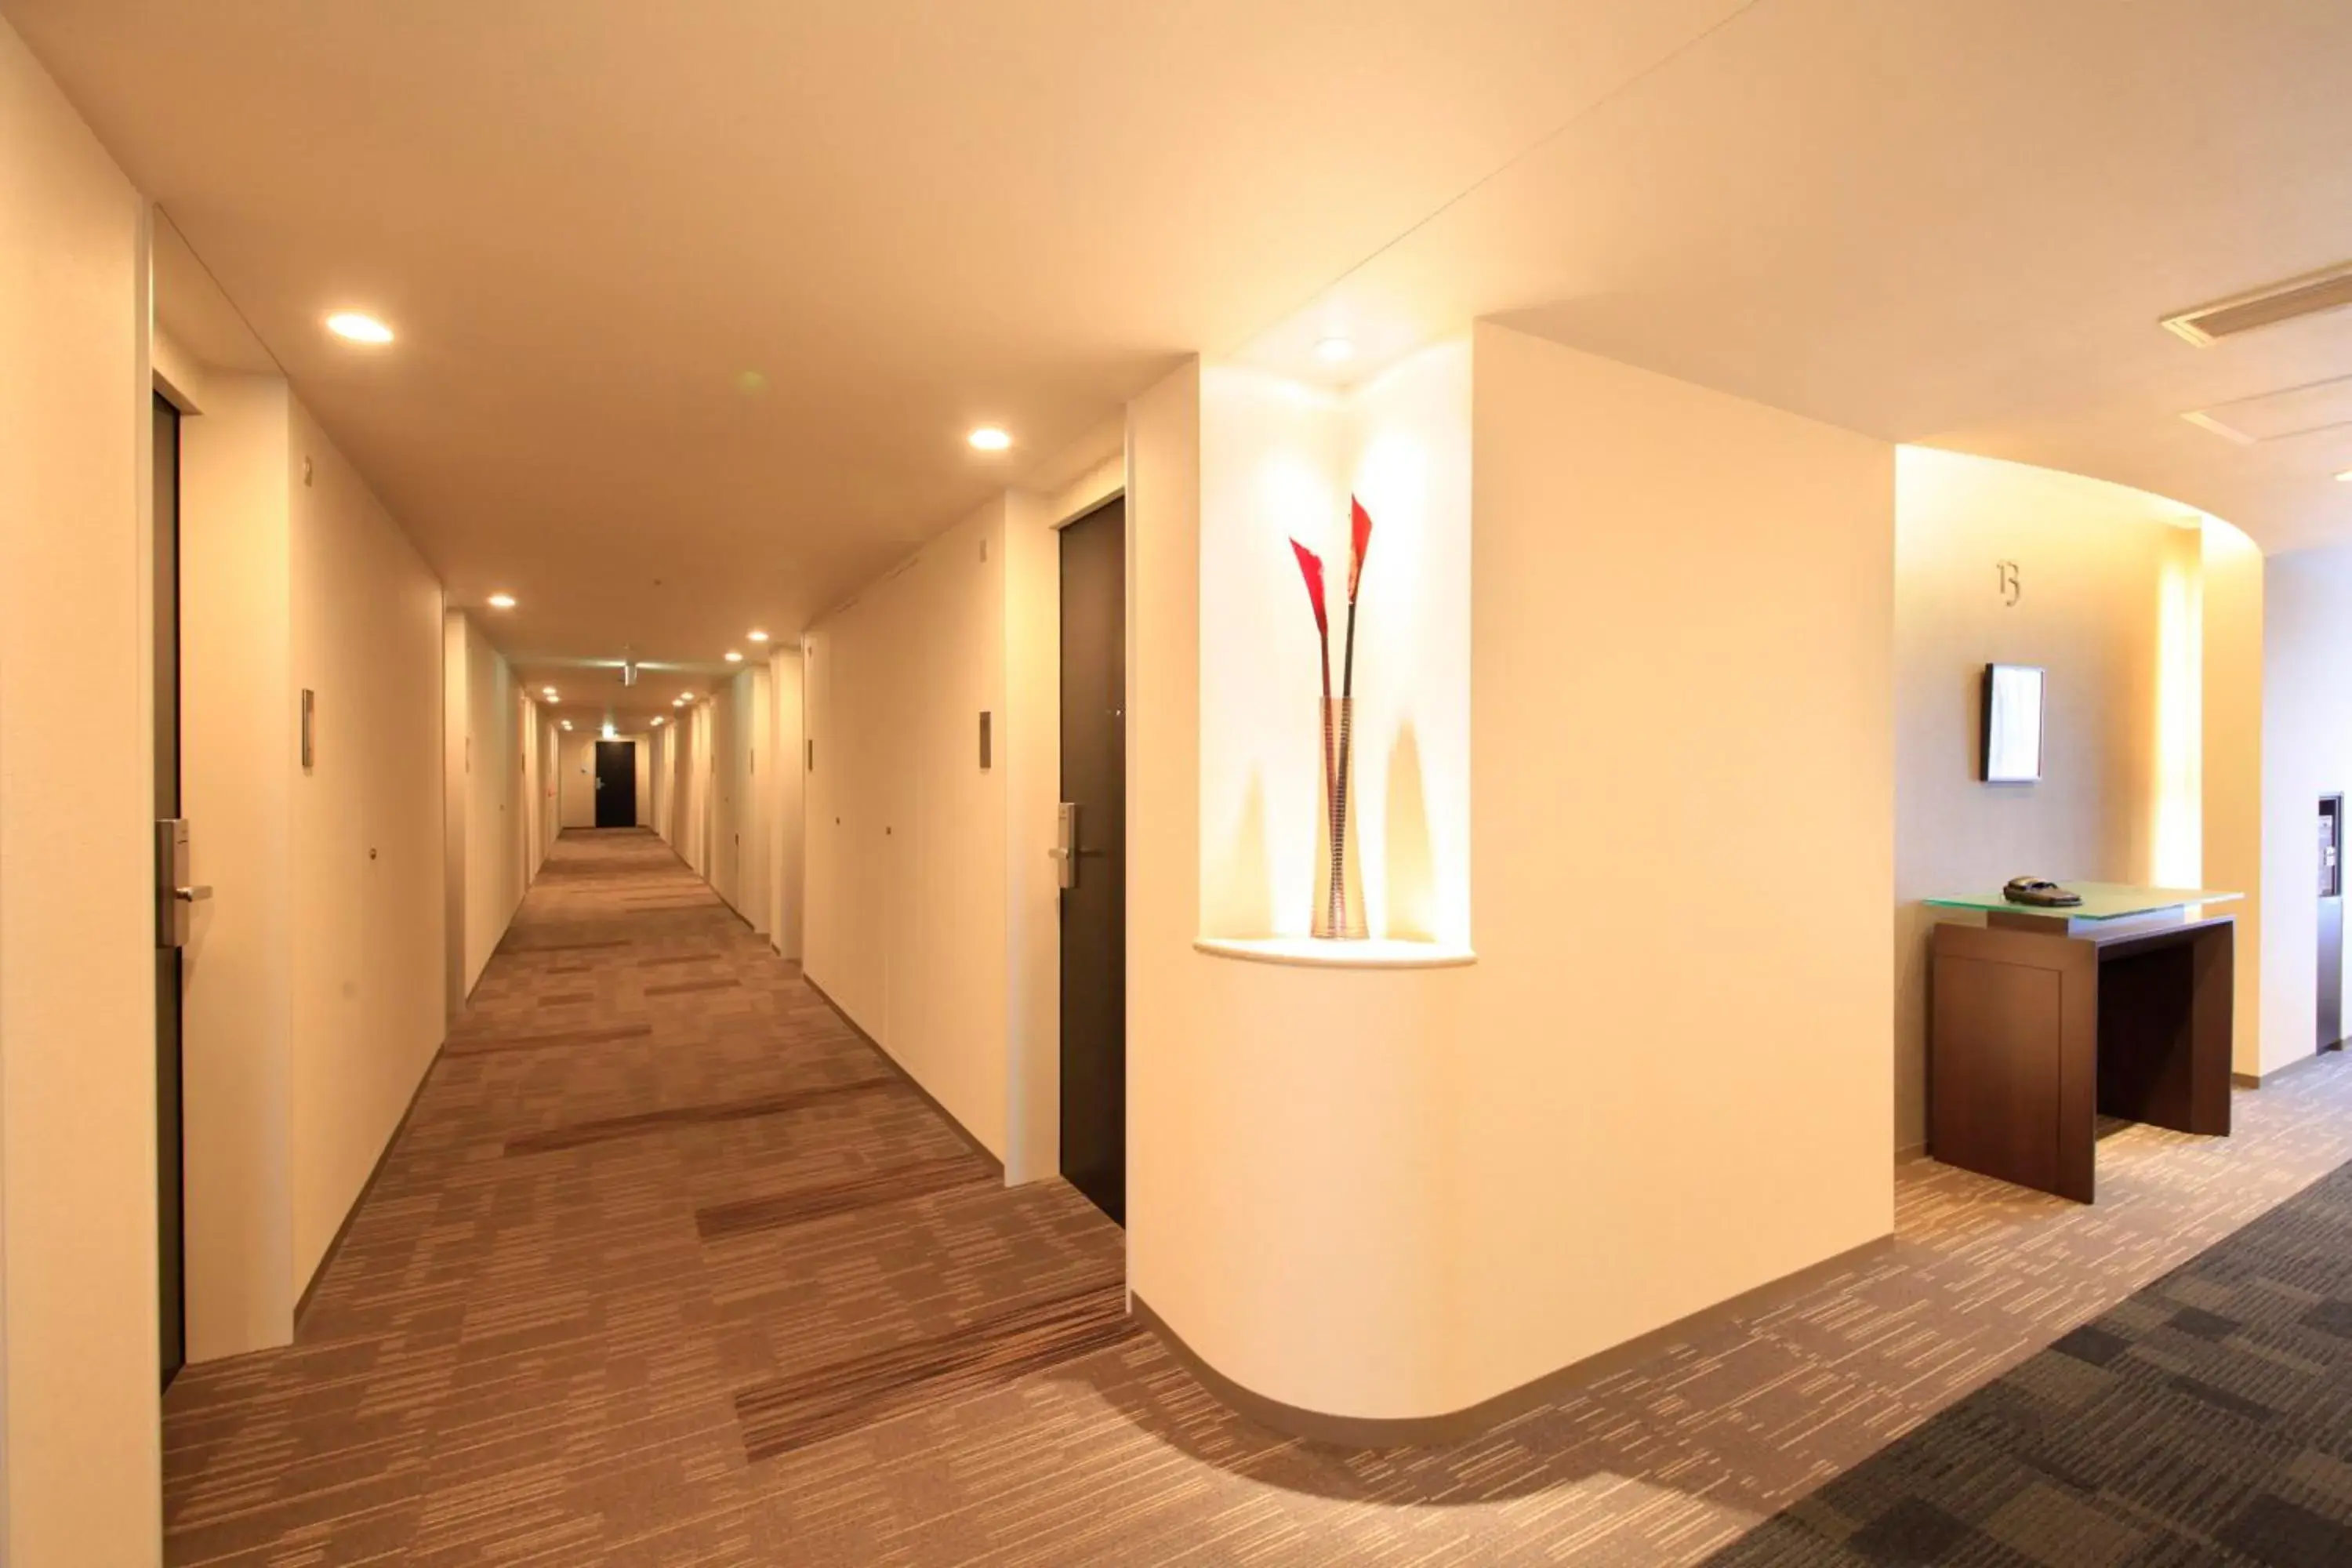 Area and facilities in Richmond Hotel Aomori